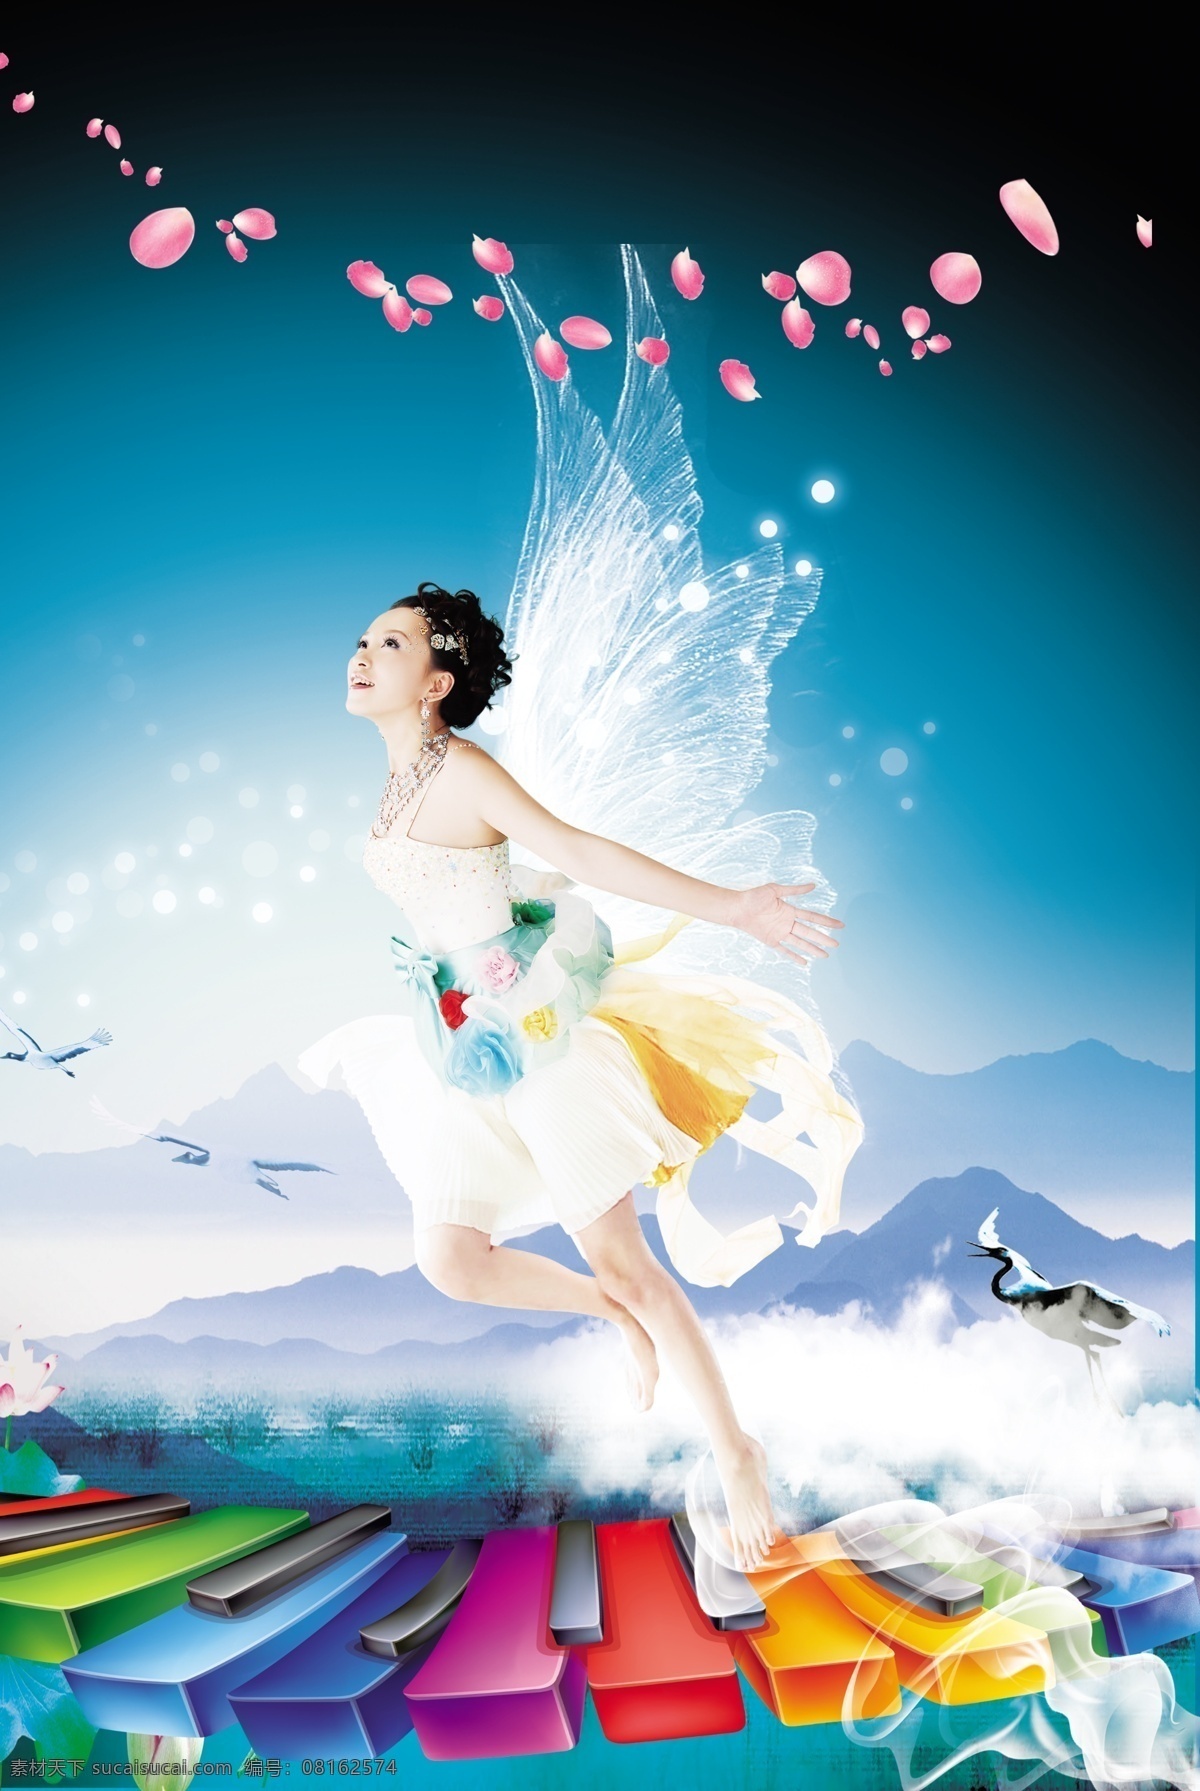 天使 海报 设计素材 天使羽翼 翅膀 星光 美女 天使的翅膀 蓝色天空 透明气泡 气泡 仙鹤 云朵 广告设计模板 源文件 psd素材 白色